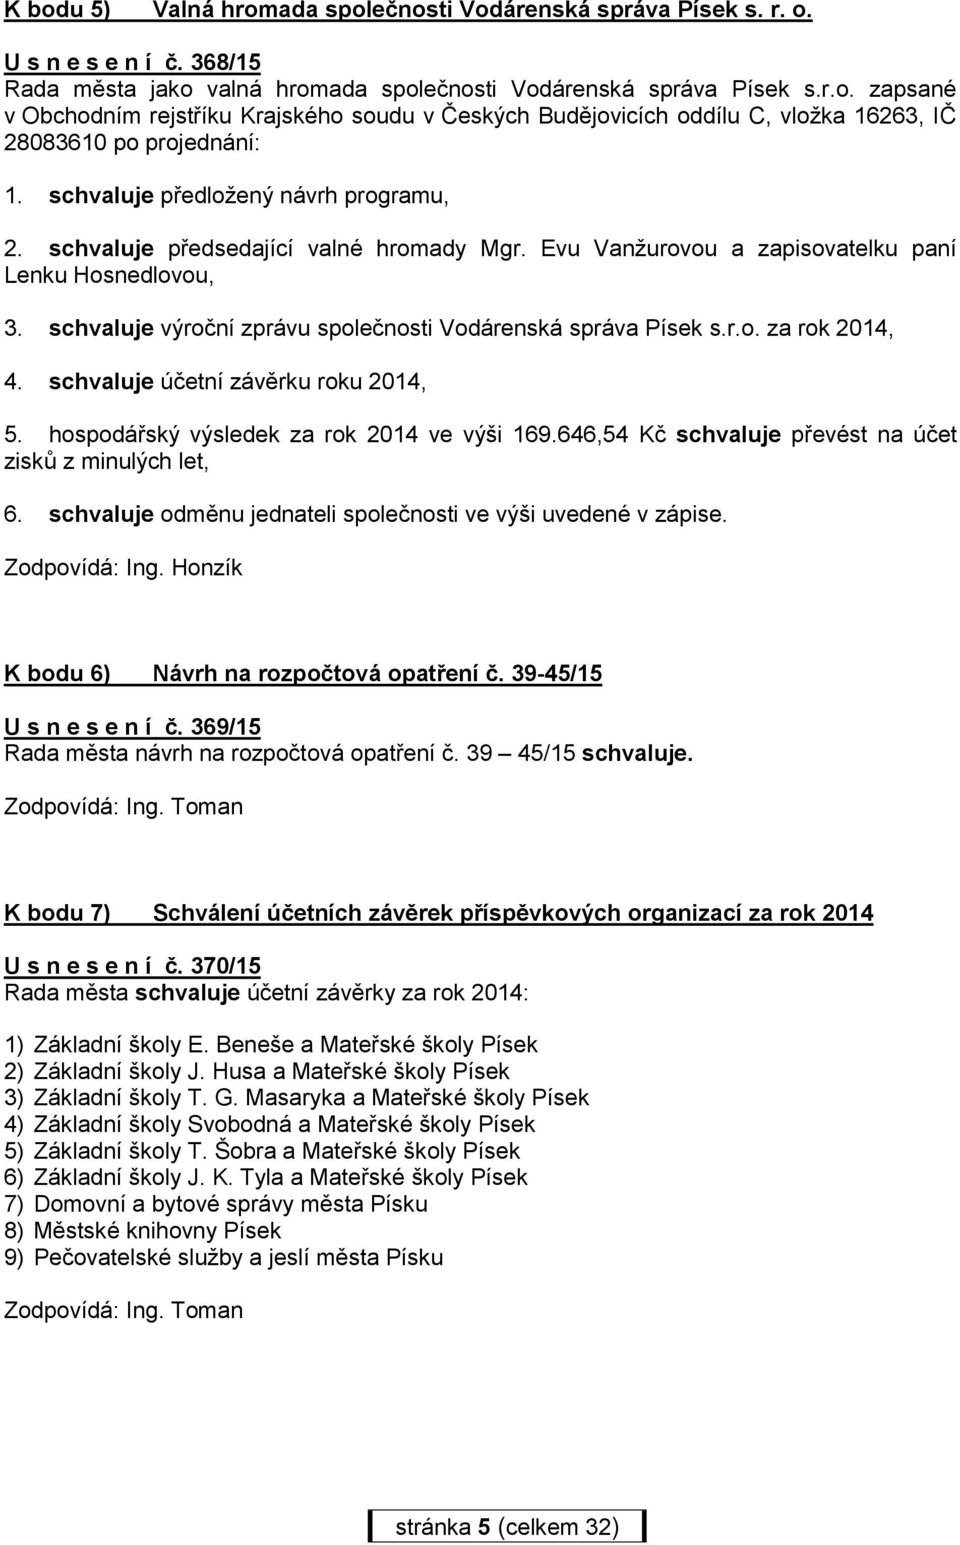 schvaluje výroční zprávu společnosti Vodárenská správa Písek s.r.o. za rok 2014, 4. schvaluje účetní závěrku roku 2014, 5. hospodářský výsledek za rok 2014 ve výši 169.